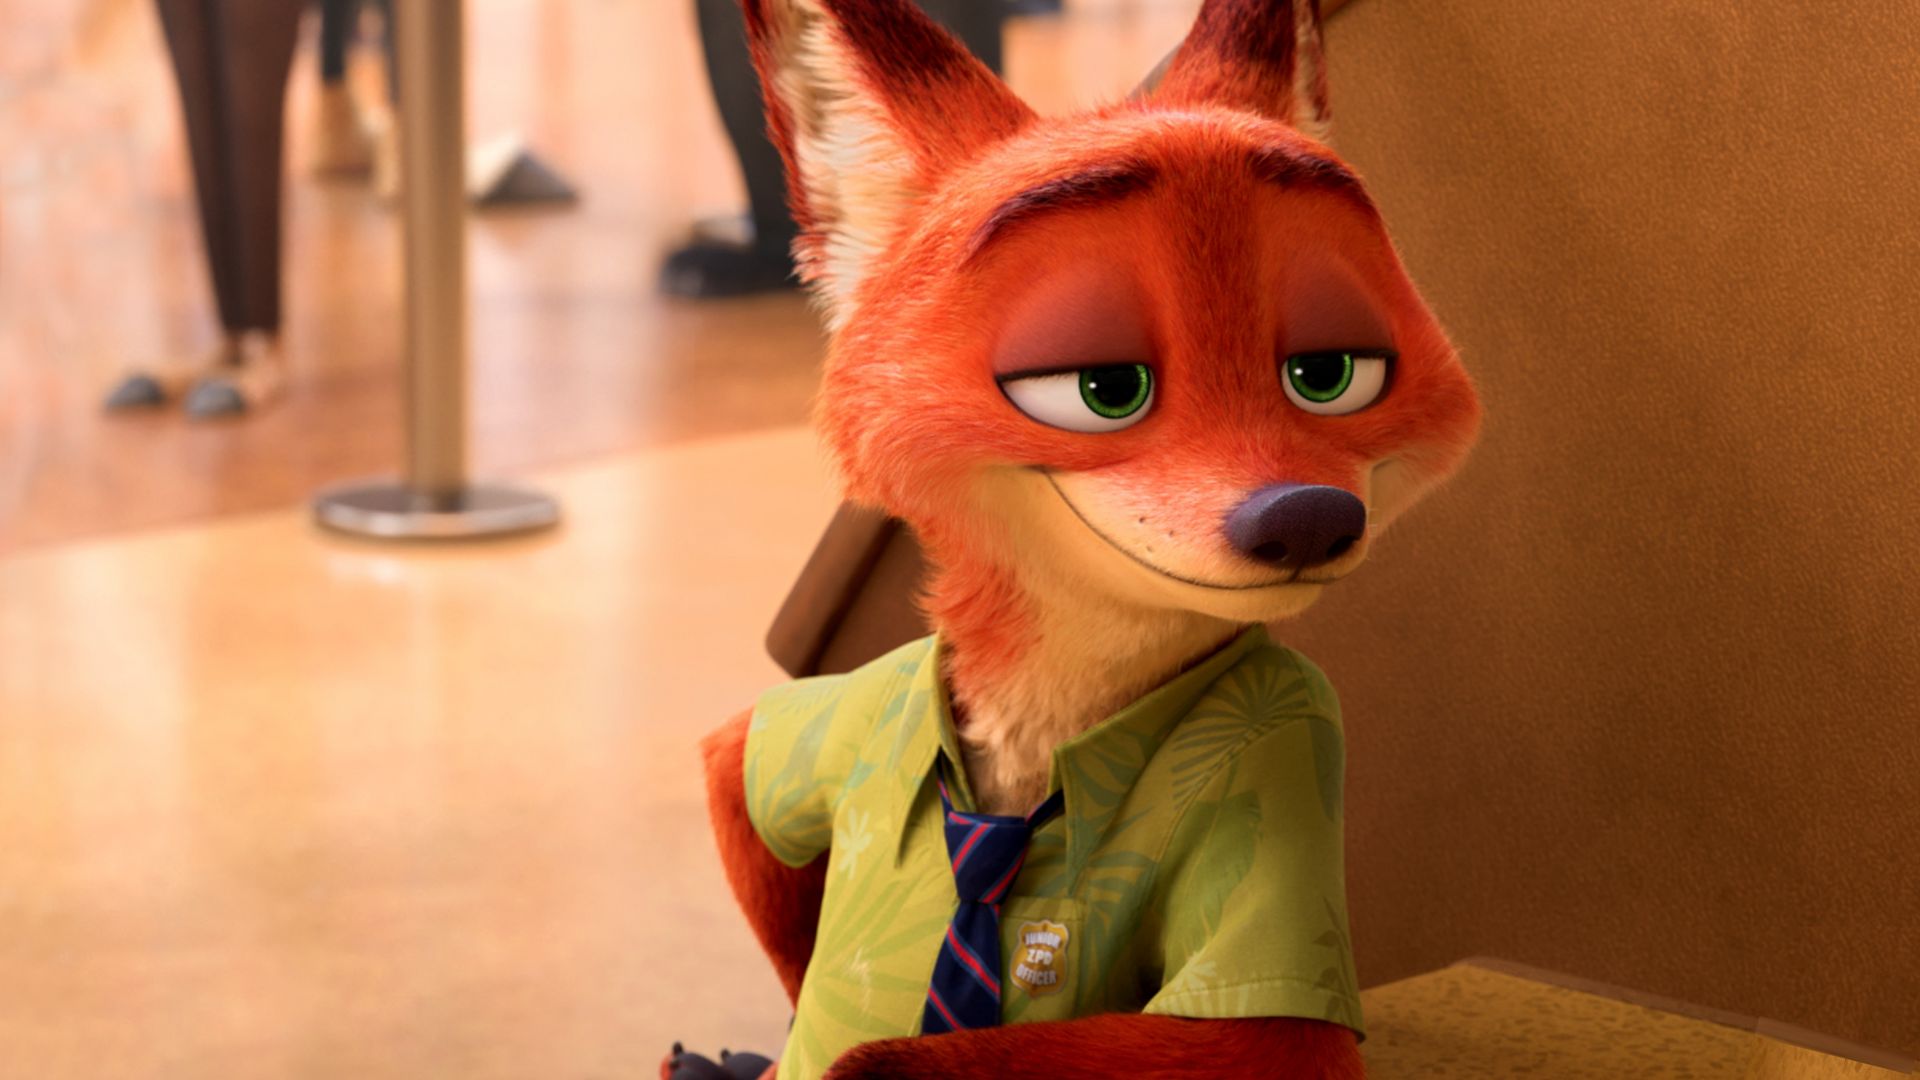 Зверополис, Мистер Фокс, Лис, Zootopia, fox, Best Animation Movies of 2016, cartoon (horizontal)